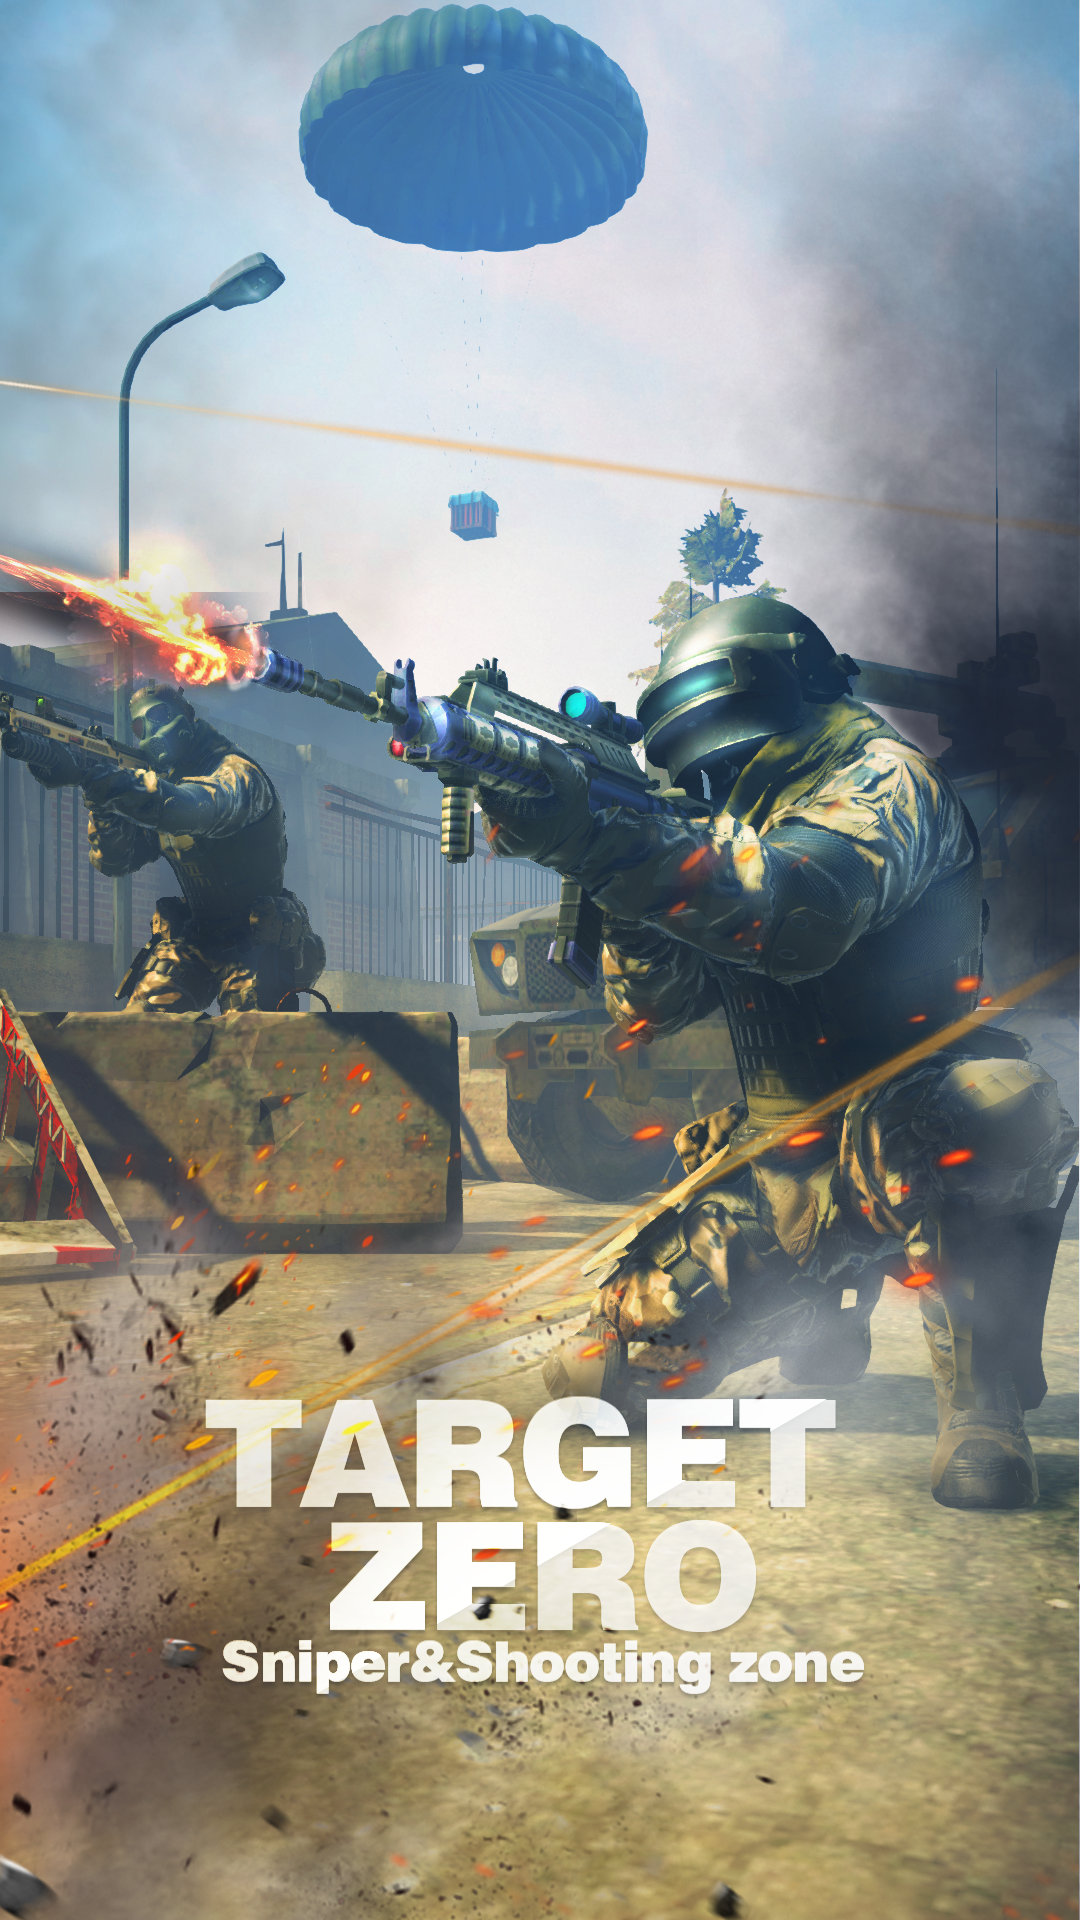 Screenshot 1 of Target Zero: Scharfschützen- und Schießzone 1.13